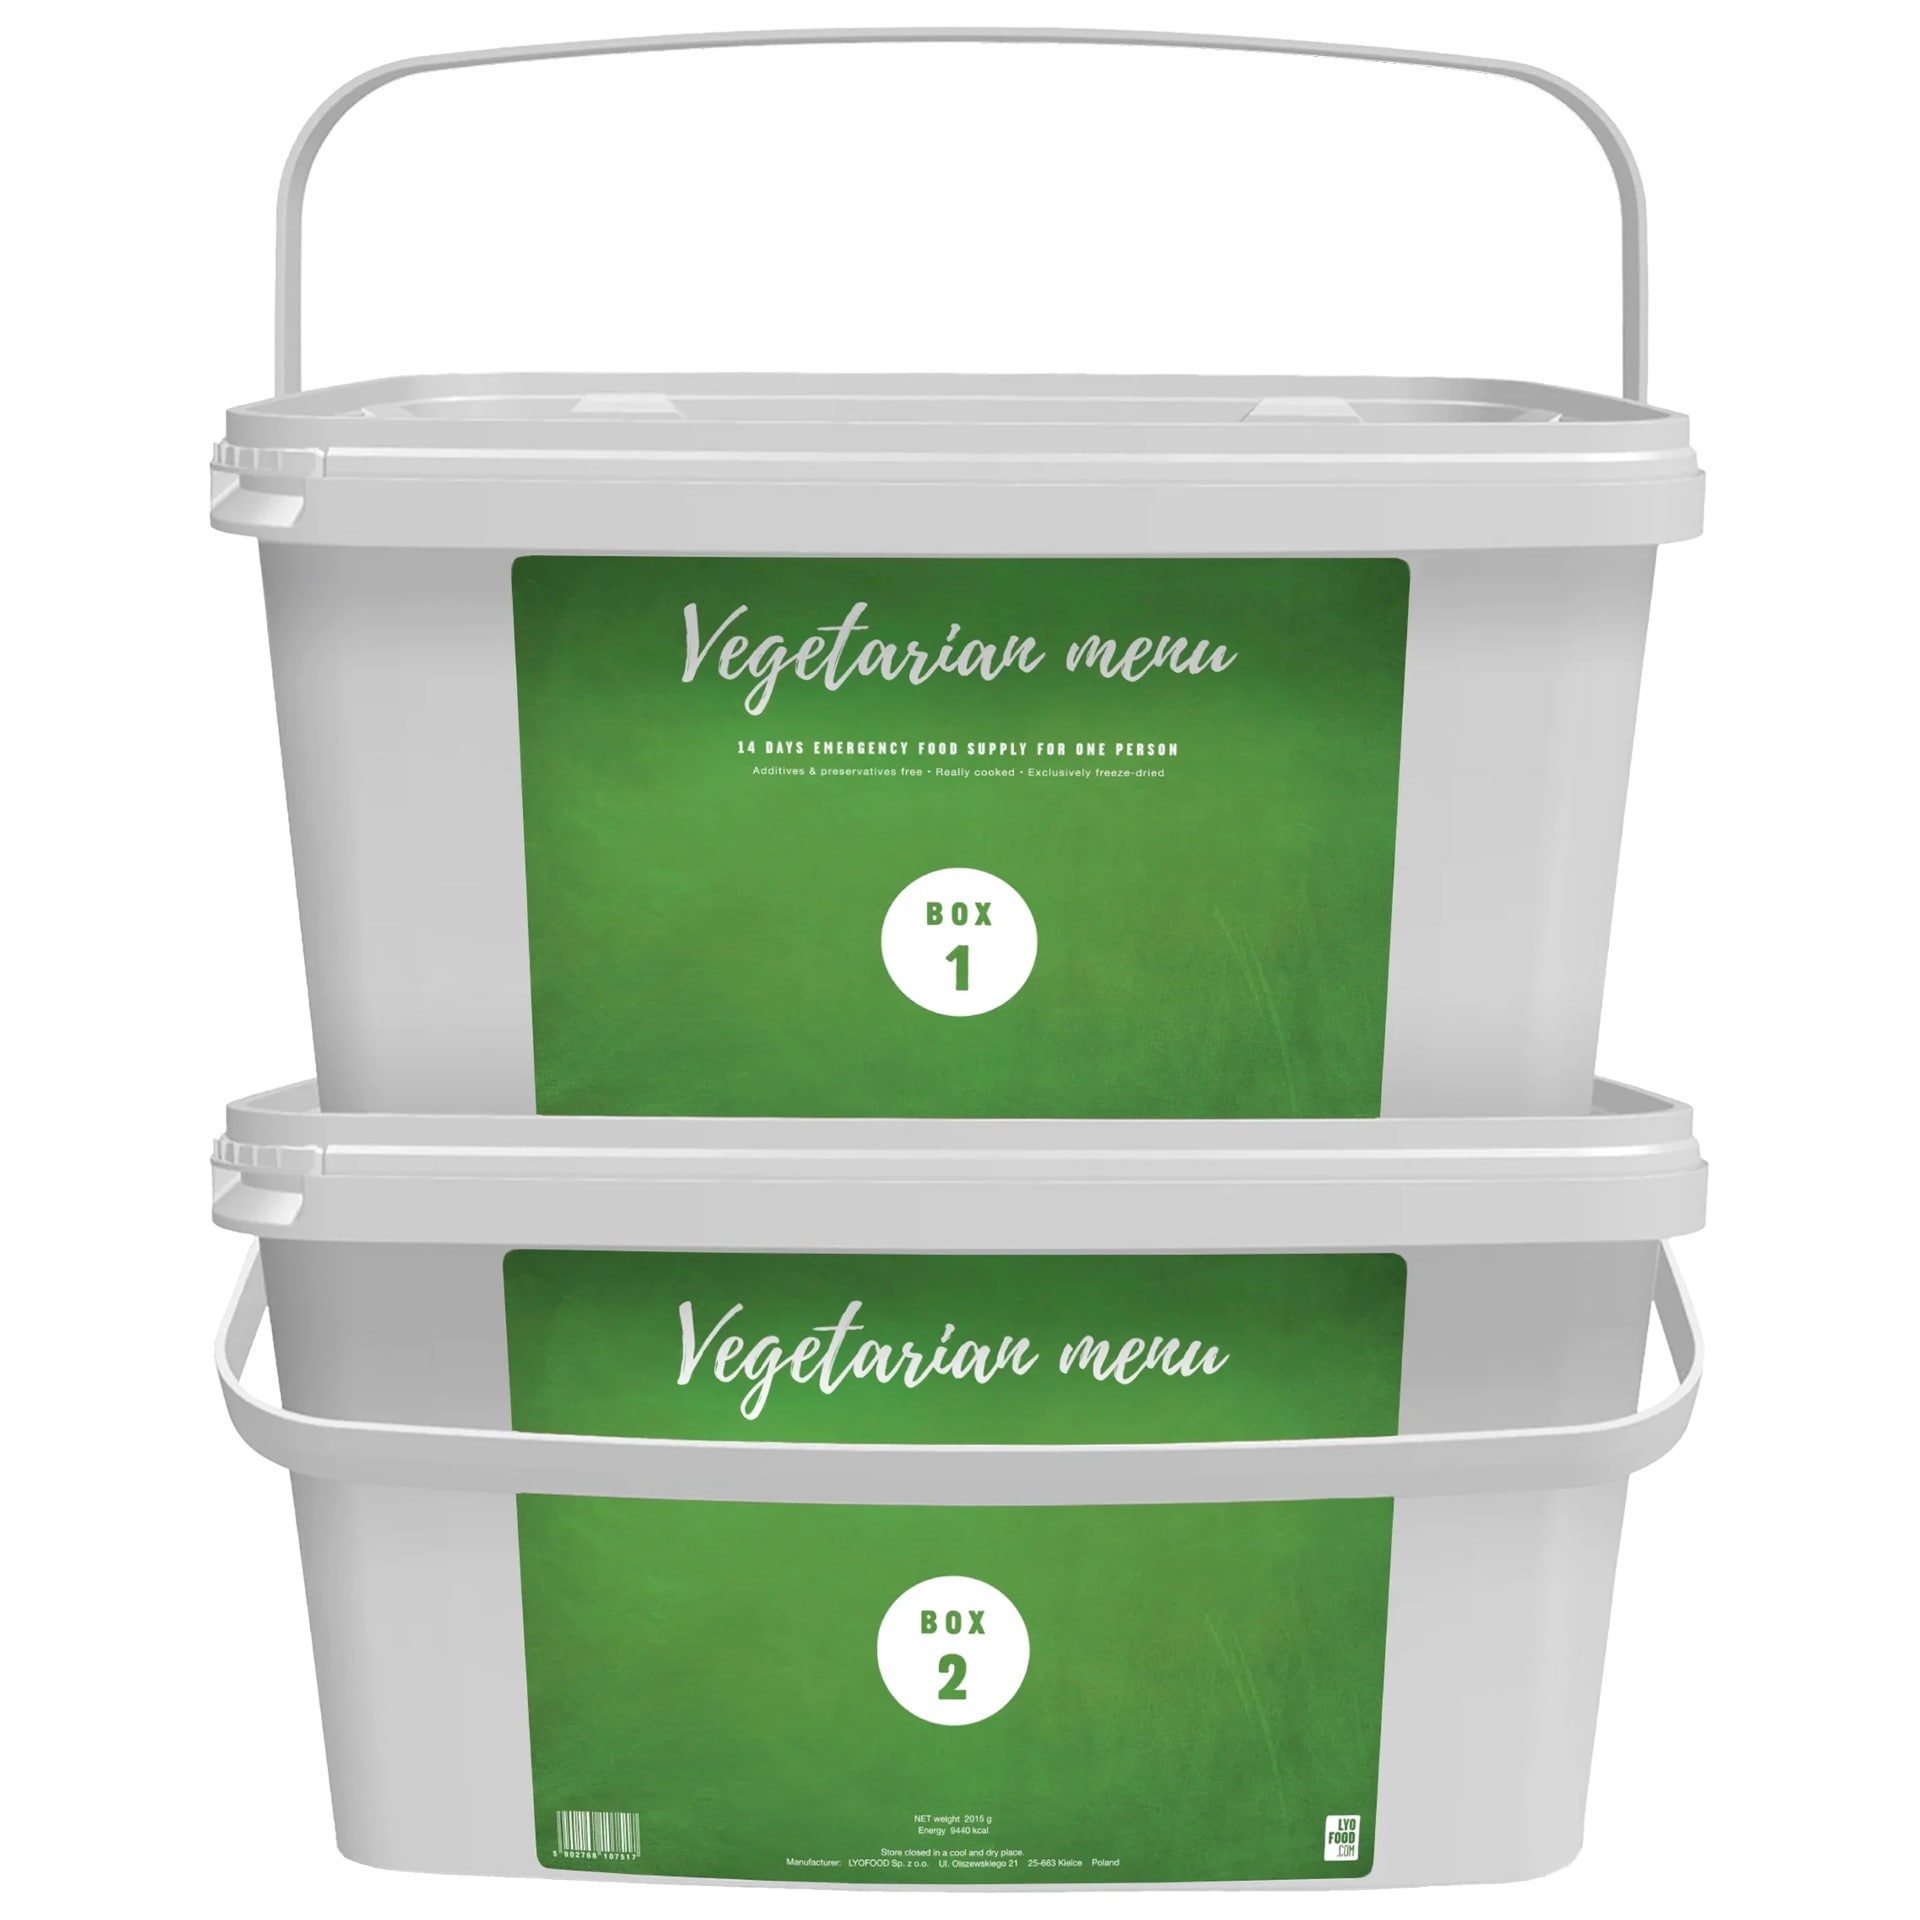 Żywność liofilizowana LYO Food 14-dniowy pakiet żywnościowy - wegetariański